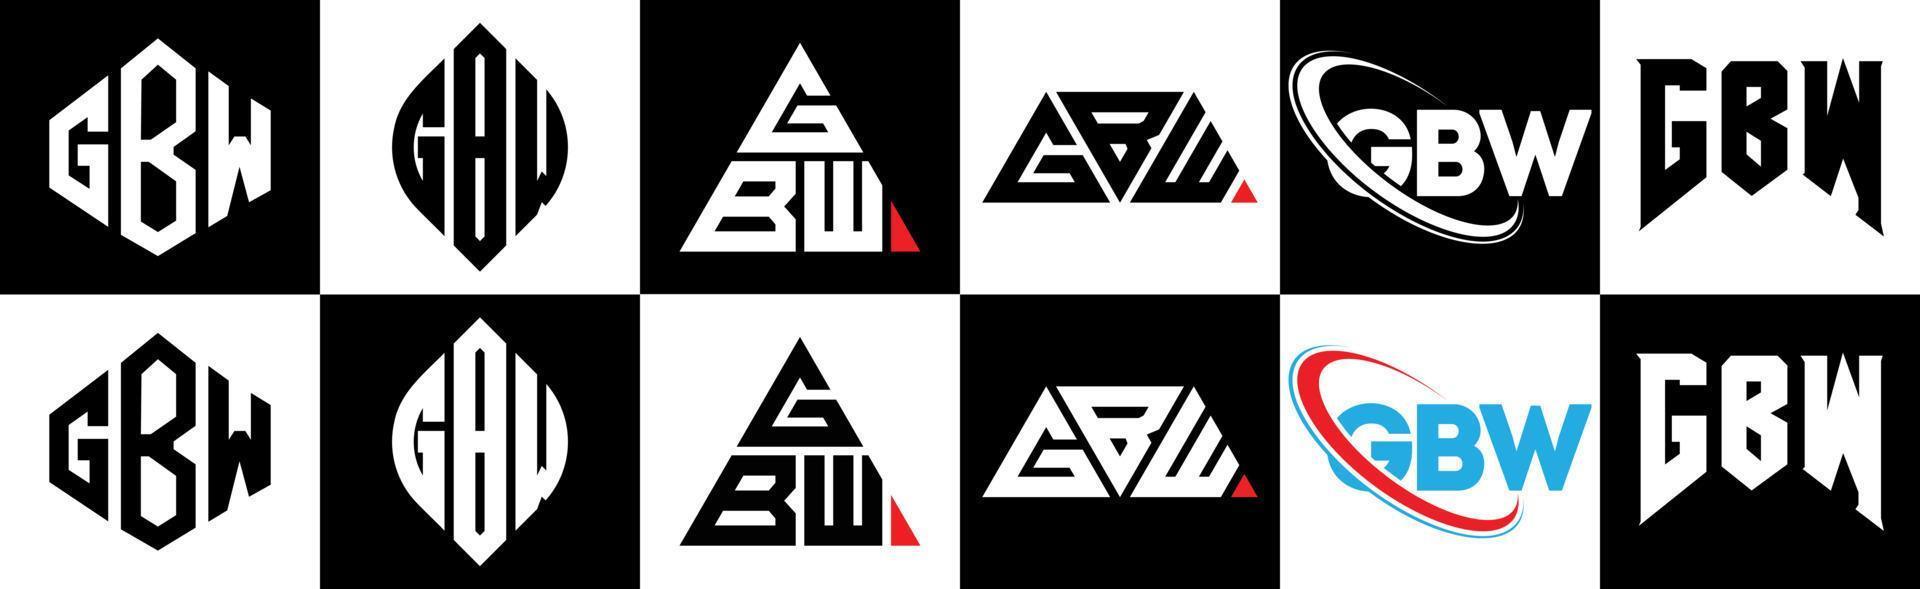 design de logotipo de carta gbw em seis estilos. gbw polígono, círculo, triângulo, hexágono, estilo plano e simples com logotipo de carta de variação de cor preto e branco definido em uma prancheta. gbw logotipo minimalista e clássico vetor